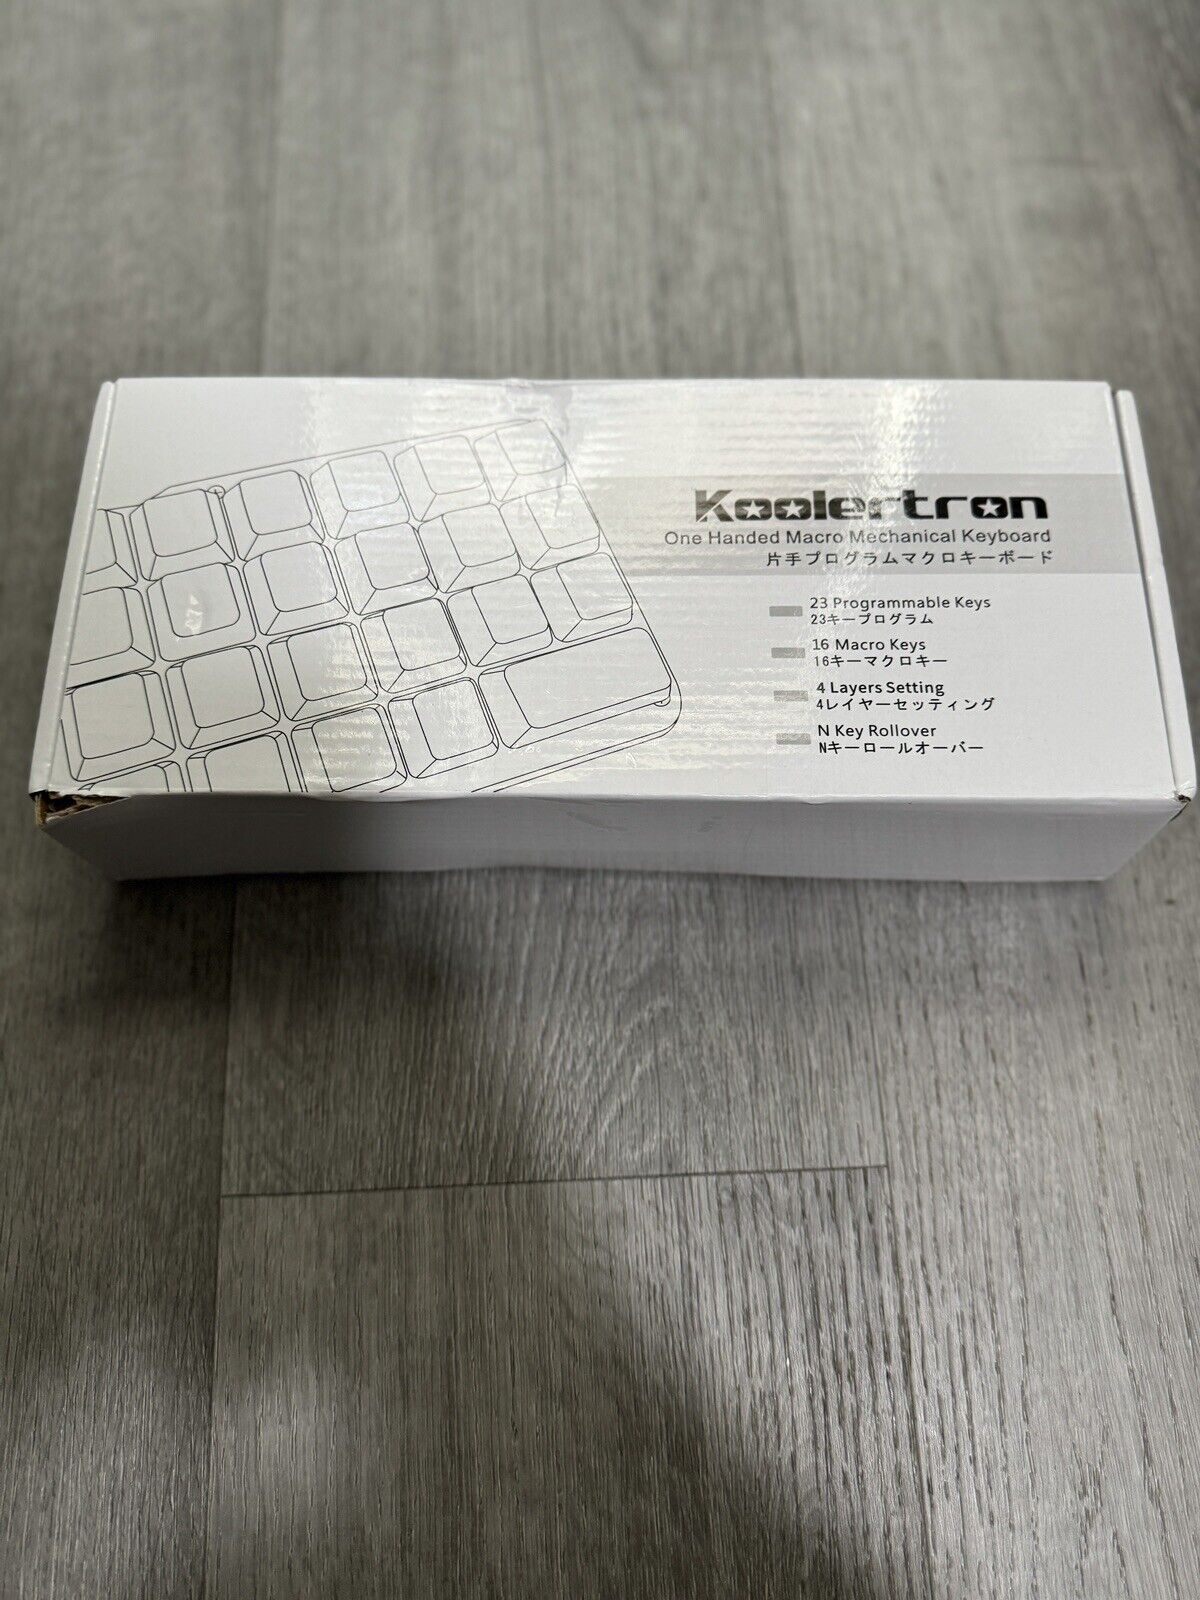 Koolertron One Handed Macro Mechanical Keyboard,23 Fully Programmable Keys, w/Ex